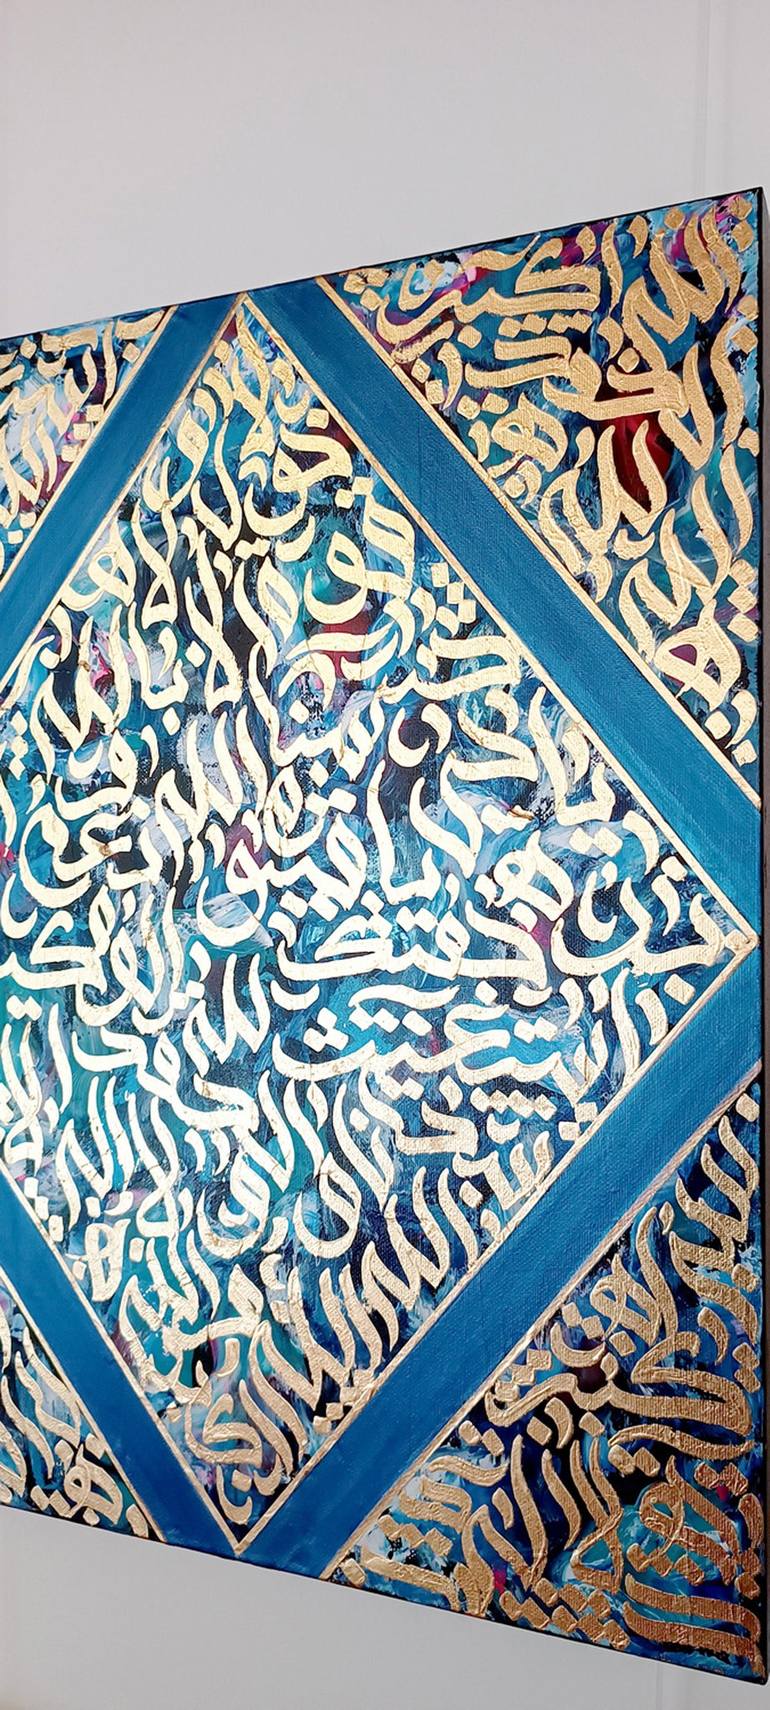 Original Abstract Painting by Muhammad Waqas